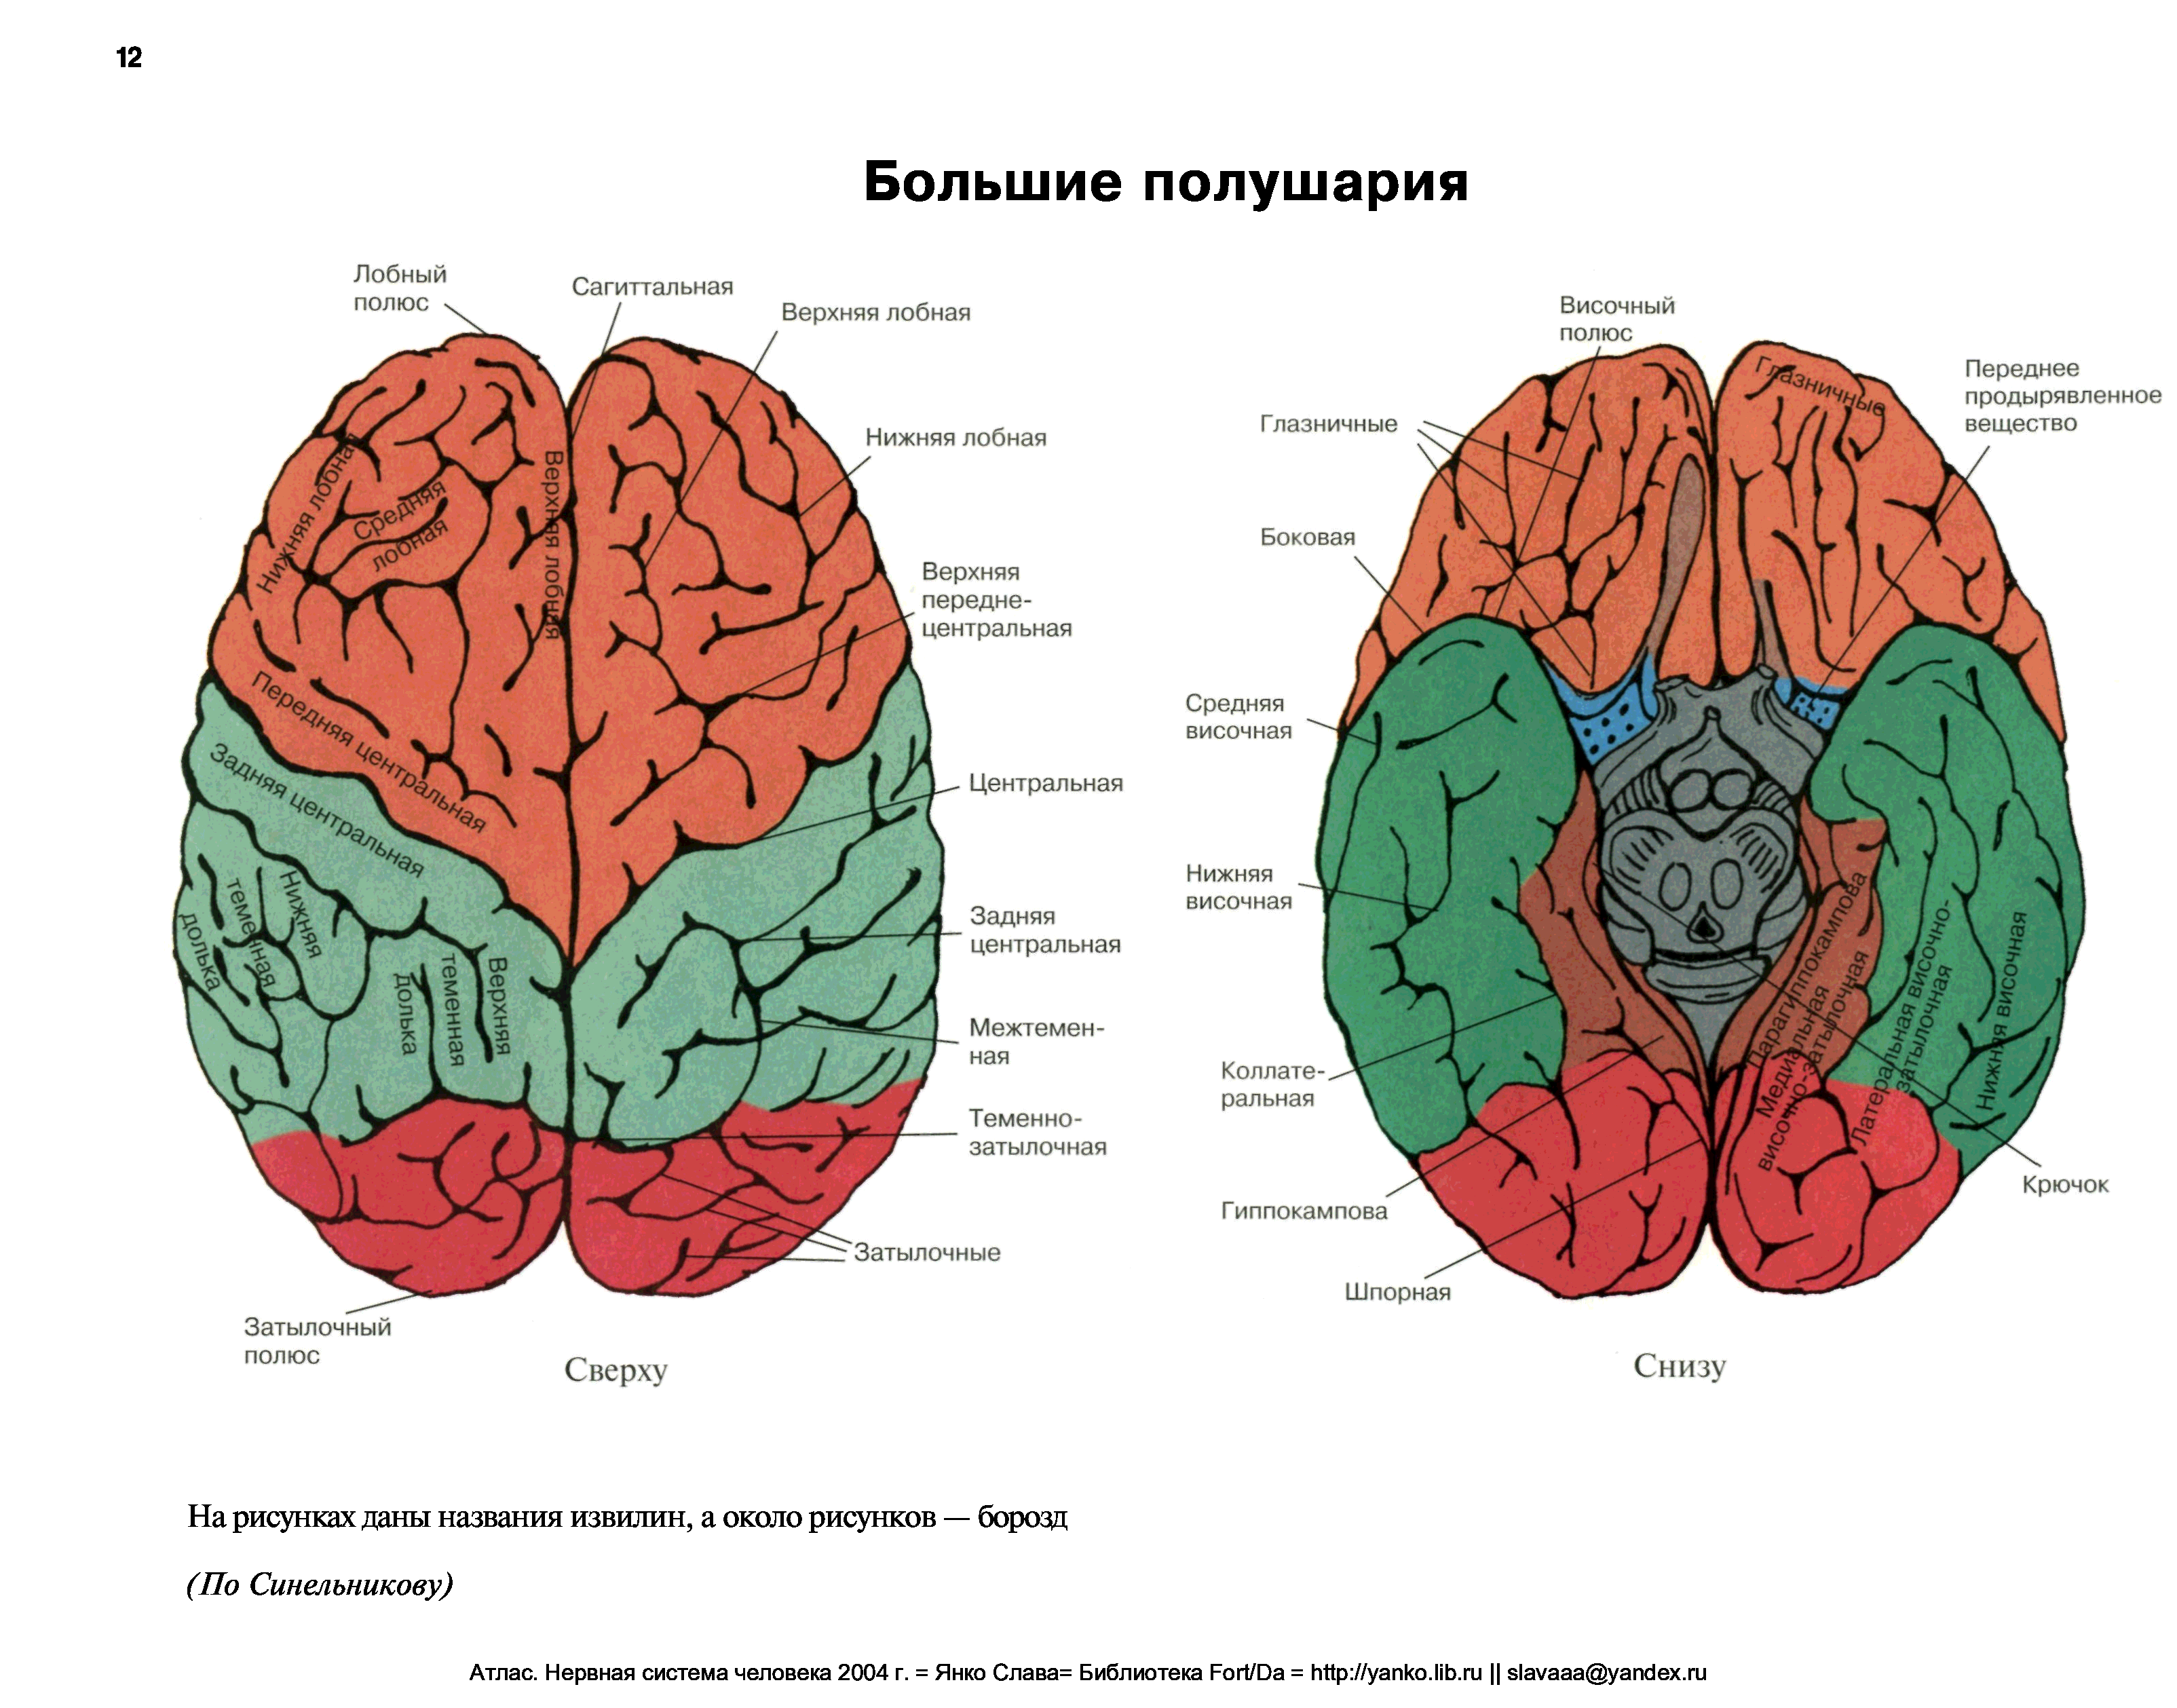 Малые полушария. Полушария головного мозга анатомия. Большие полушария головного мозга строение. Конечный мозг вид снизу. Конечный мозг борозды и извилины полушарий.